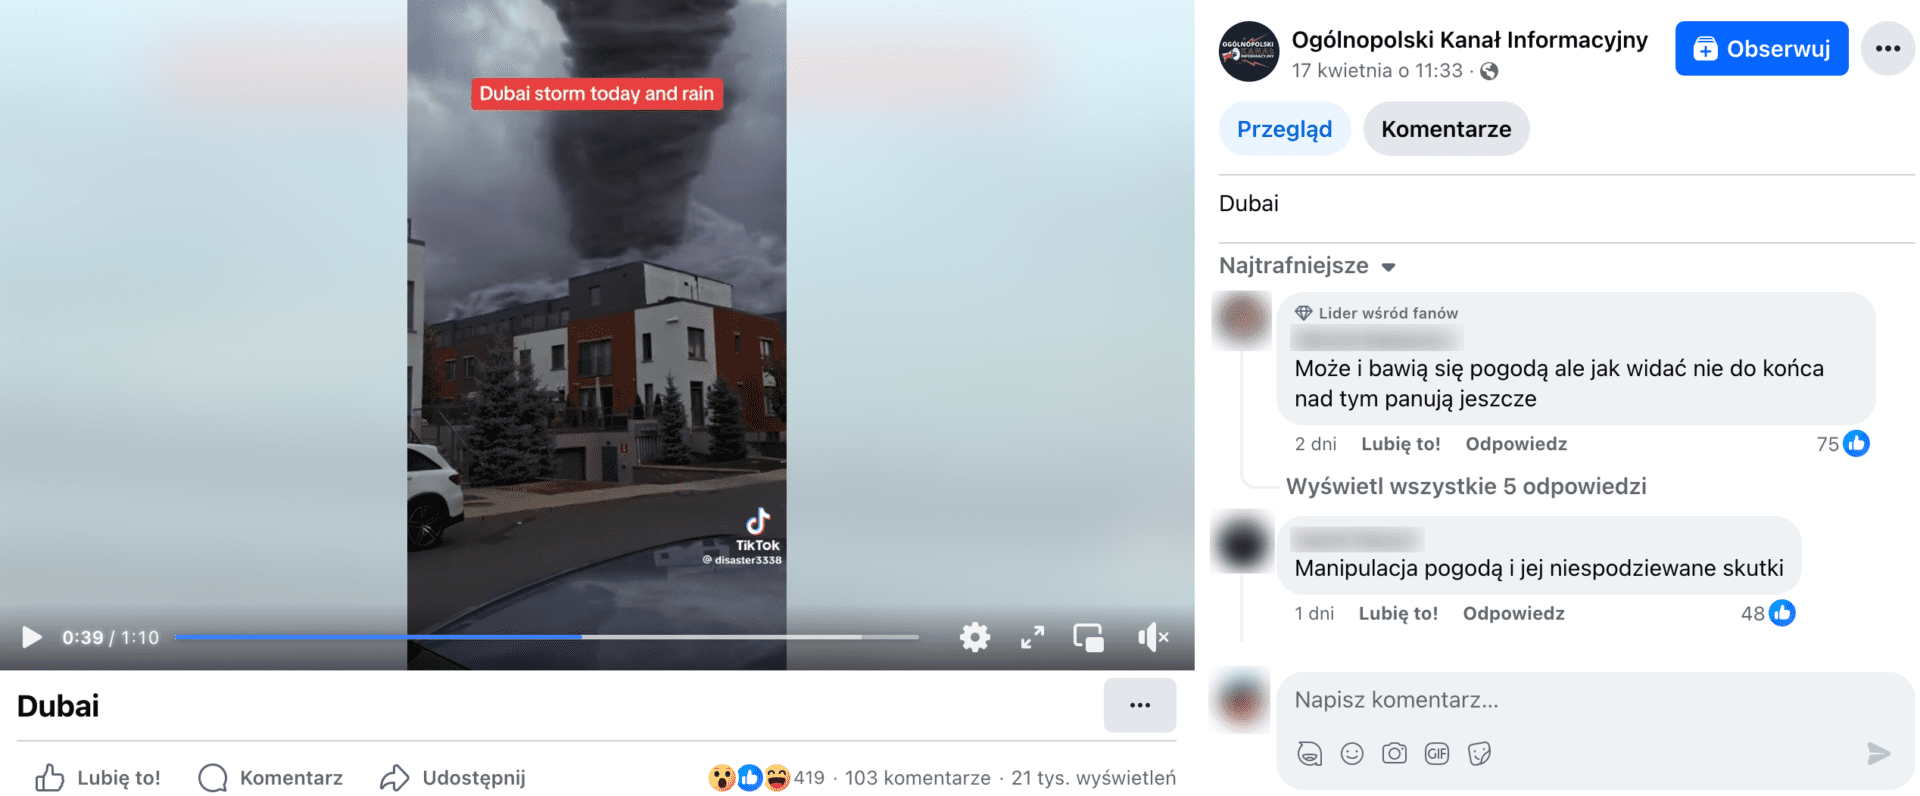 Zrzut ekranu omawianego nagrania. W kadrze widoczny jest budynek, a za nim tornado. Film ma ponad 400 reakcji, ponad 100 komentarzy i ponad 21 tys. wyświetleń.